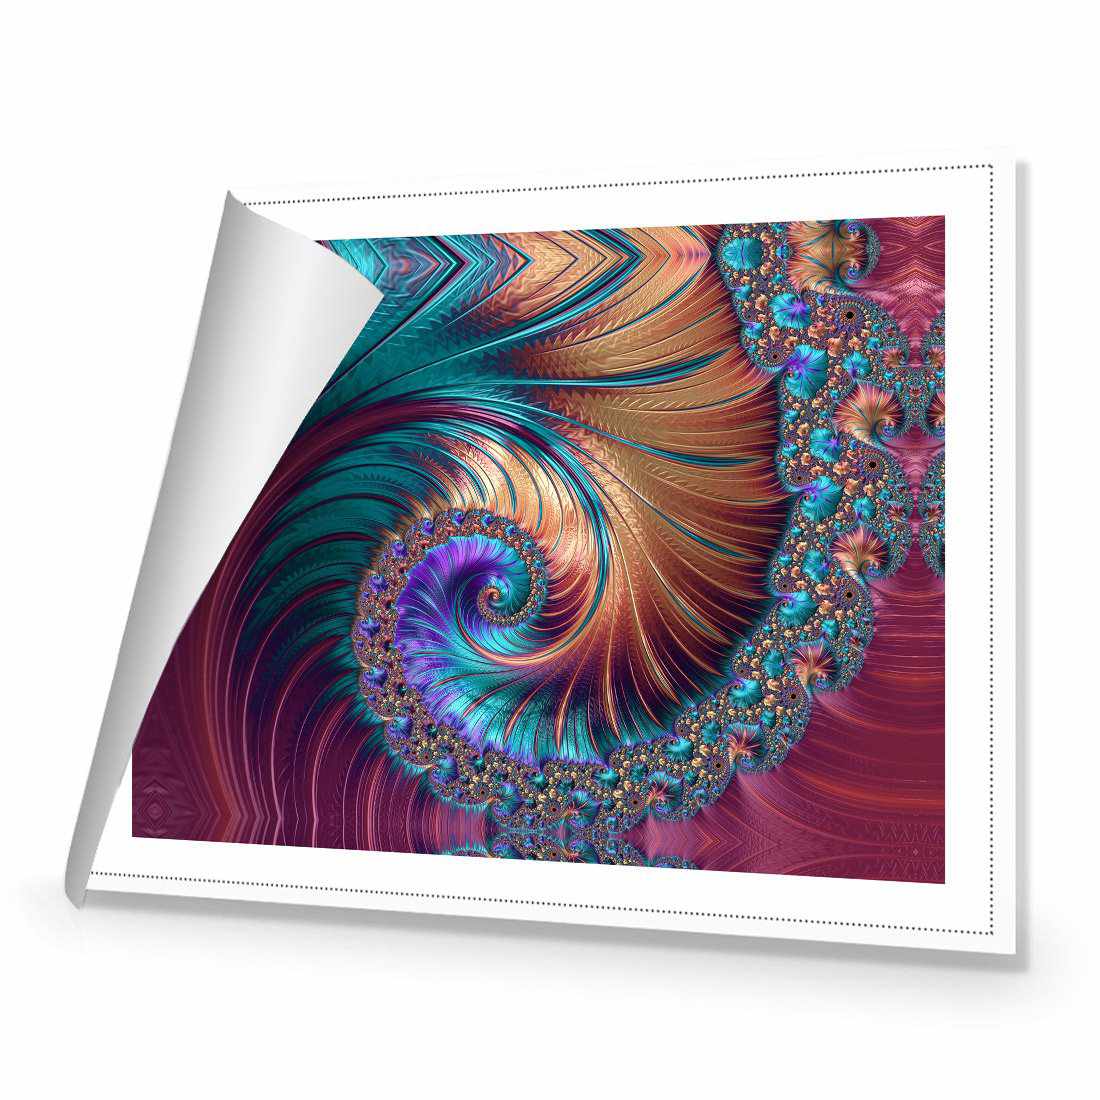 Luxe Spiral Canvas Art-Canvas-Wall Art Designs-45x30cm-Rolled Canvas-Wall Art Designs